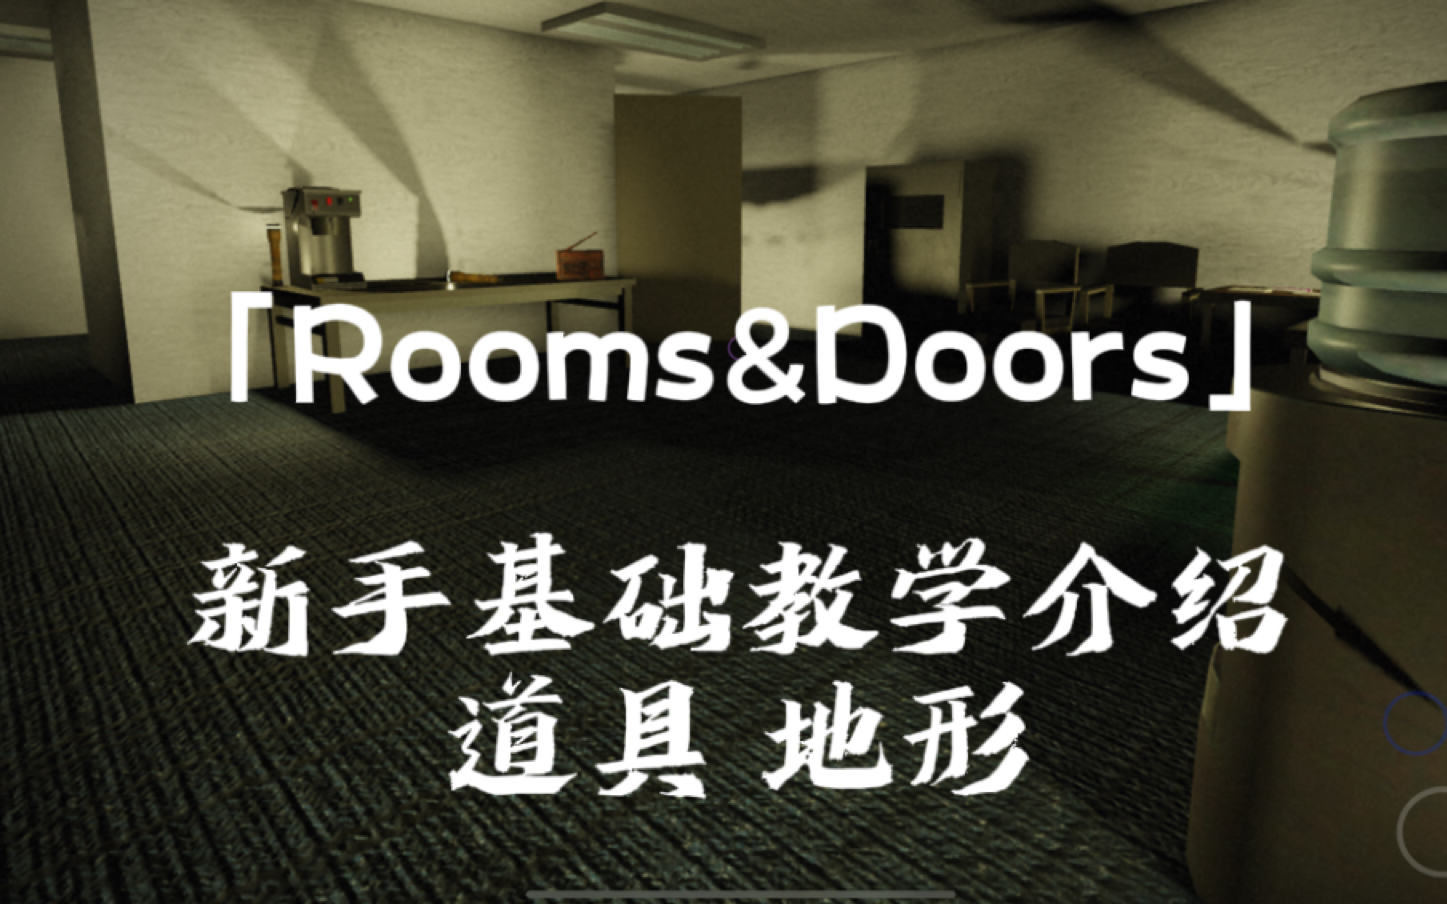 「Rooms&Doors」新手基础道具&地形攻略 第一期